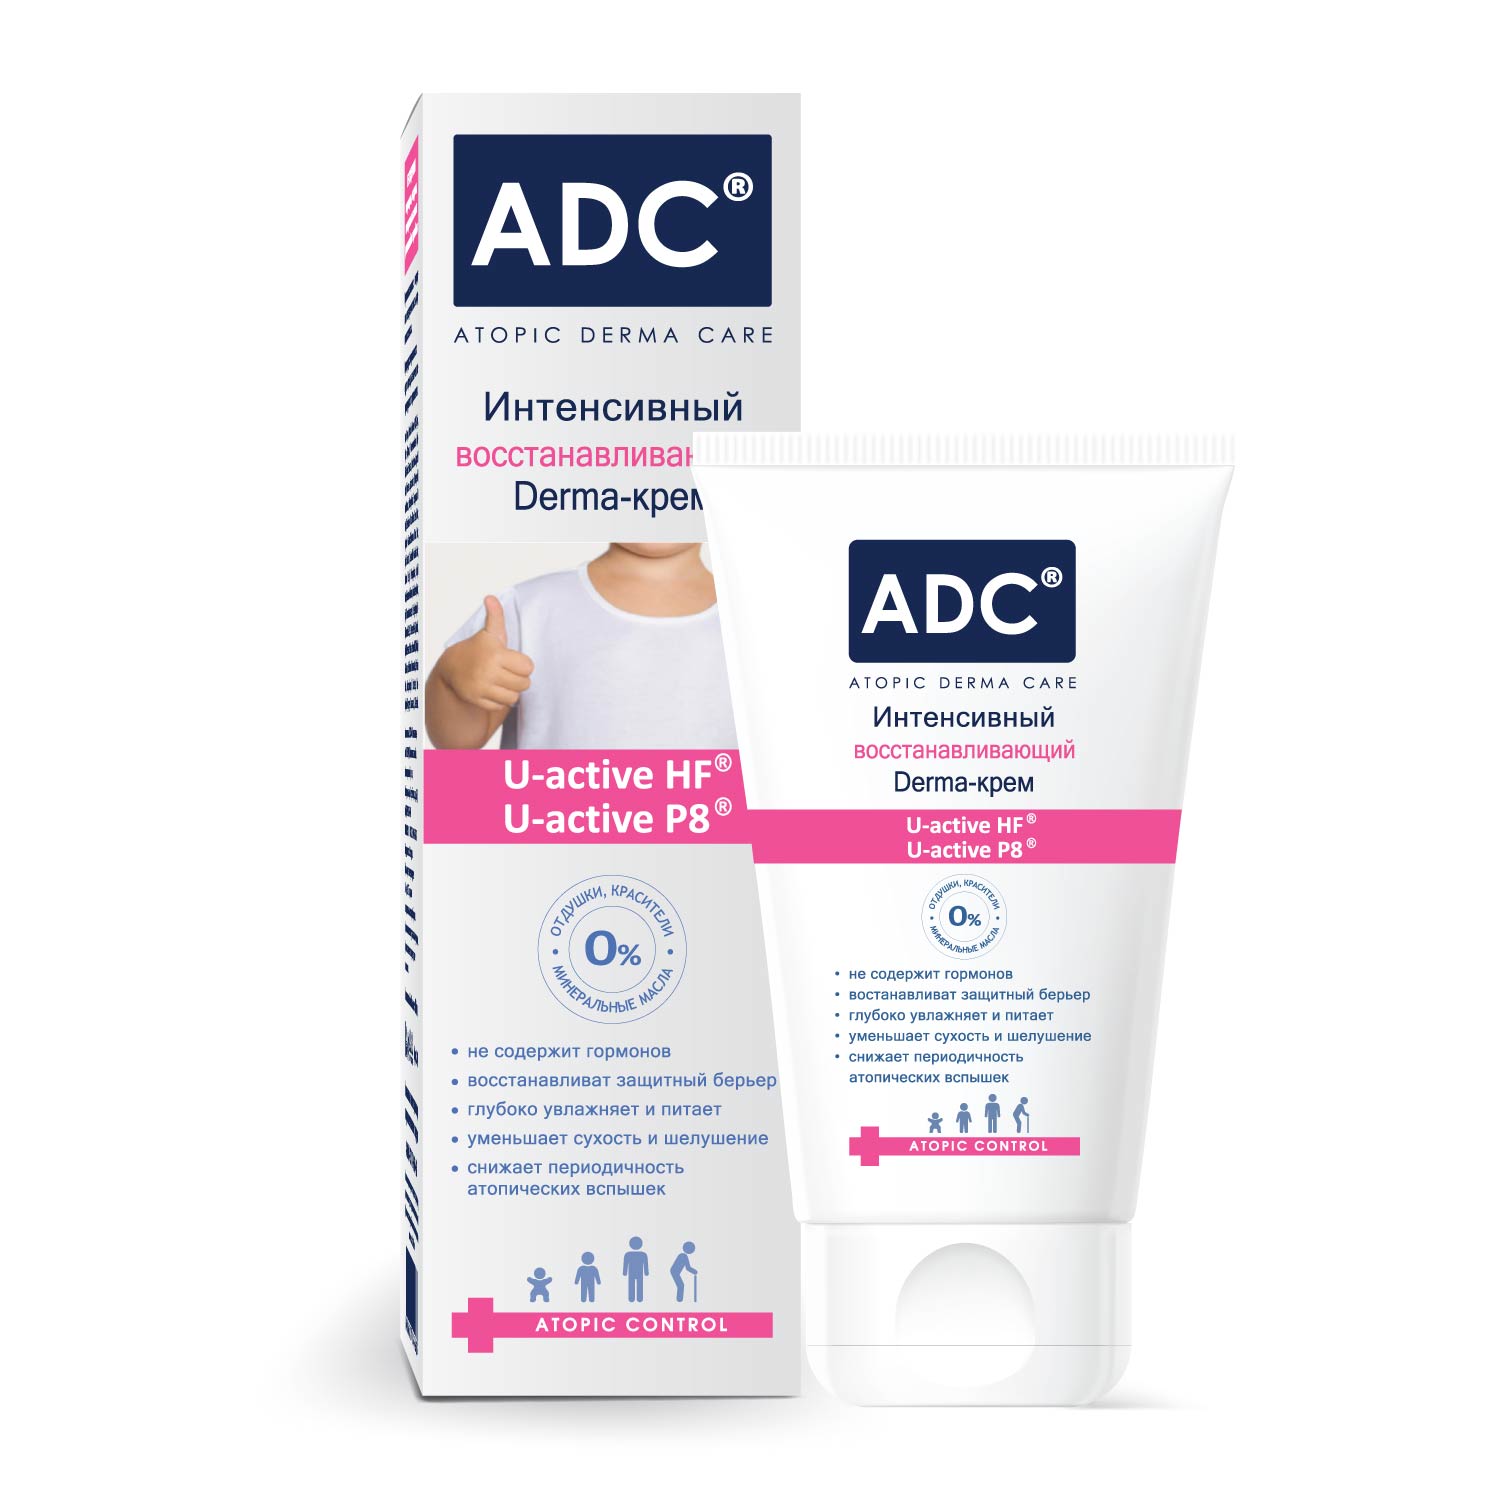 Интенсивный восстанавливающий Derma-крем серии ADC 40мл 7404